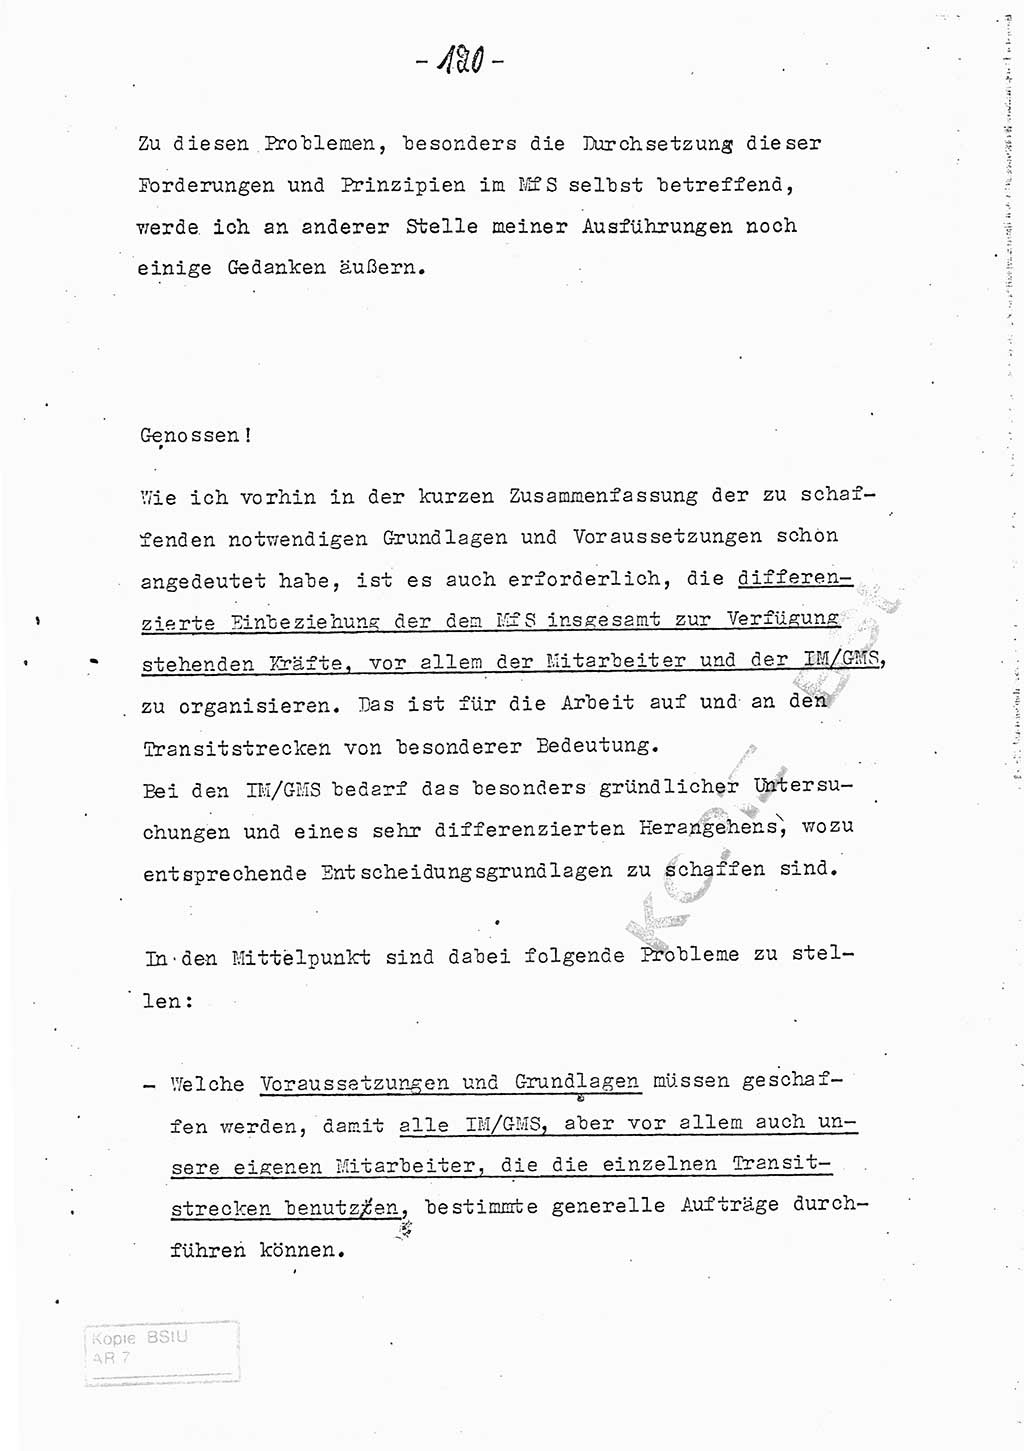 Referat (Entwurf) des Genossen Minister (Generaloberst Erich Mielke) auf der Dienstkonferenz 1972, Ministerium für Staatssicherheit (MfS) [Deutsche Demokratische Republik (DDR)], Der Minister, Geheime Verschlußsache (GVS) 008-150/72, Berlin 25.2.1972, Seite 120 (Ref. Entw. DK MfS DDR Min. GVS 008-150/72 1972, S. 120)